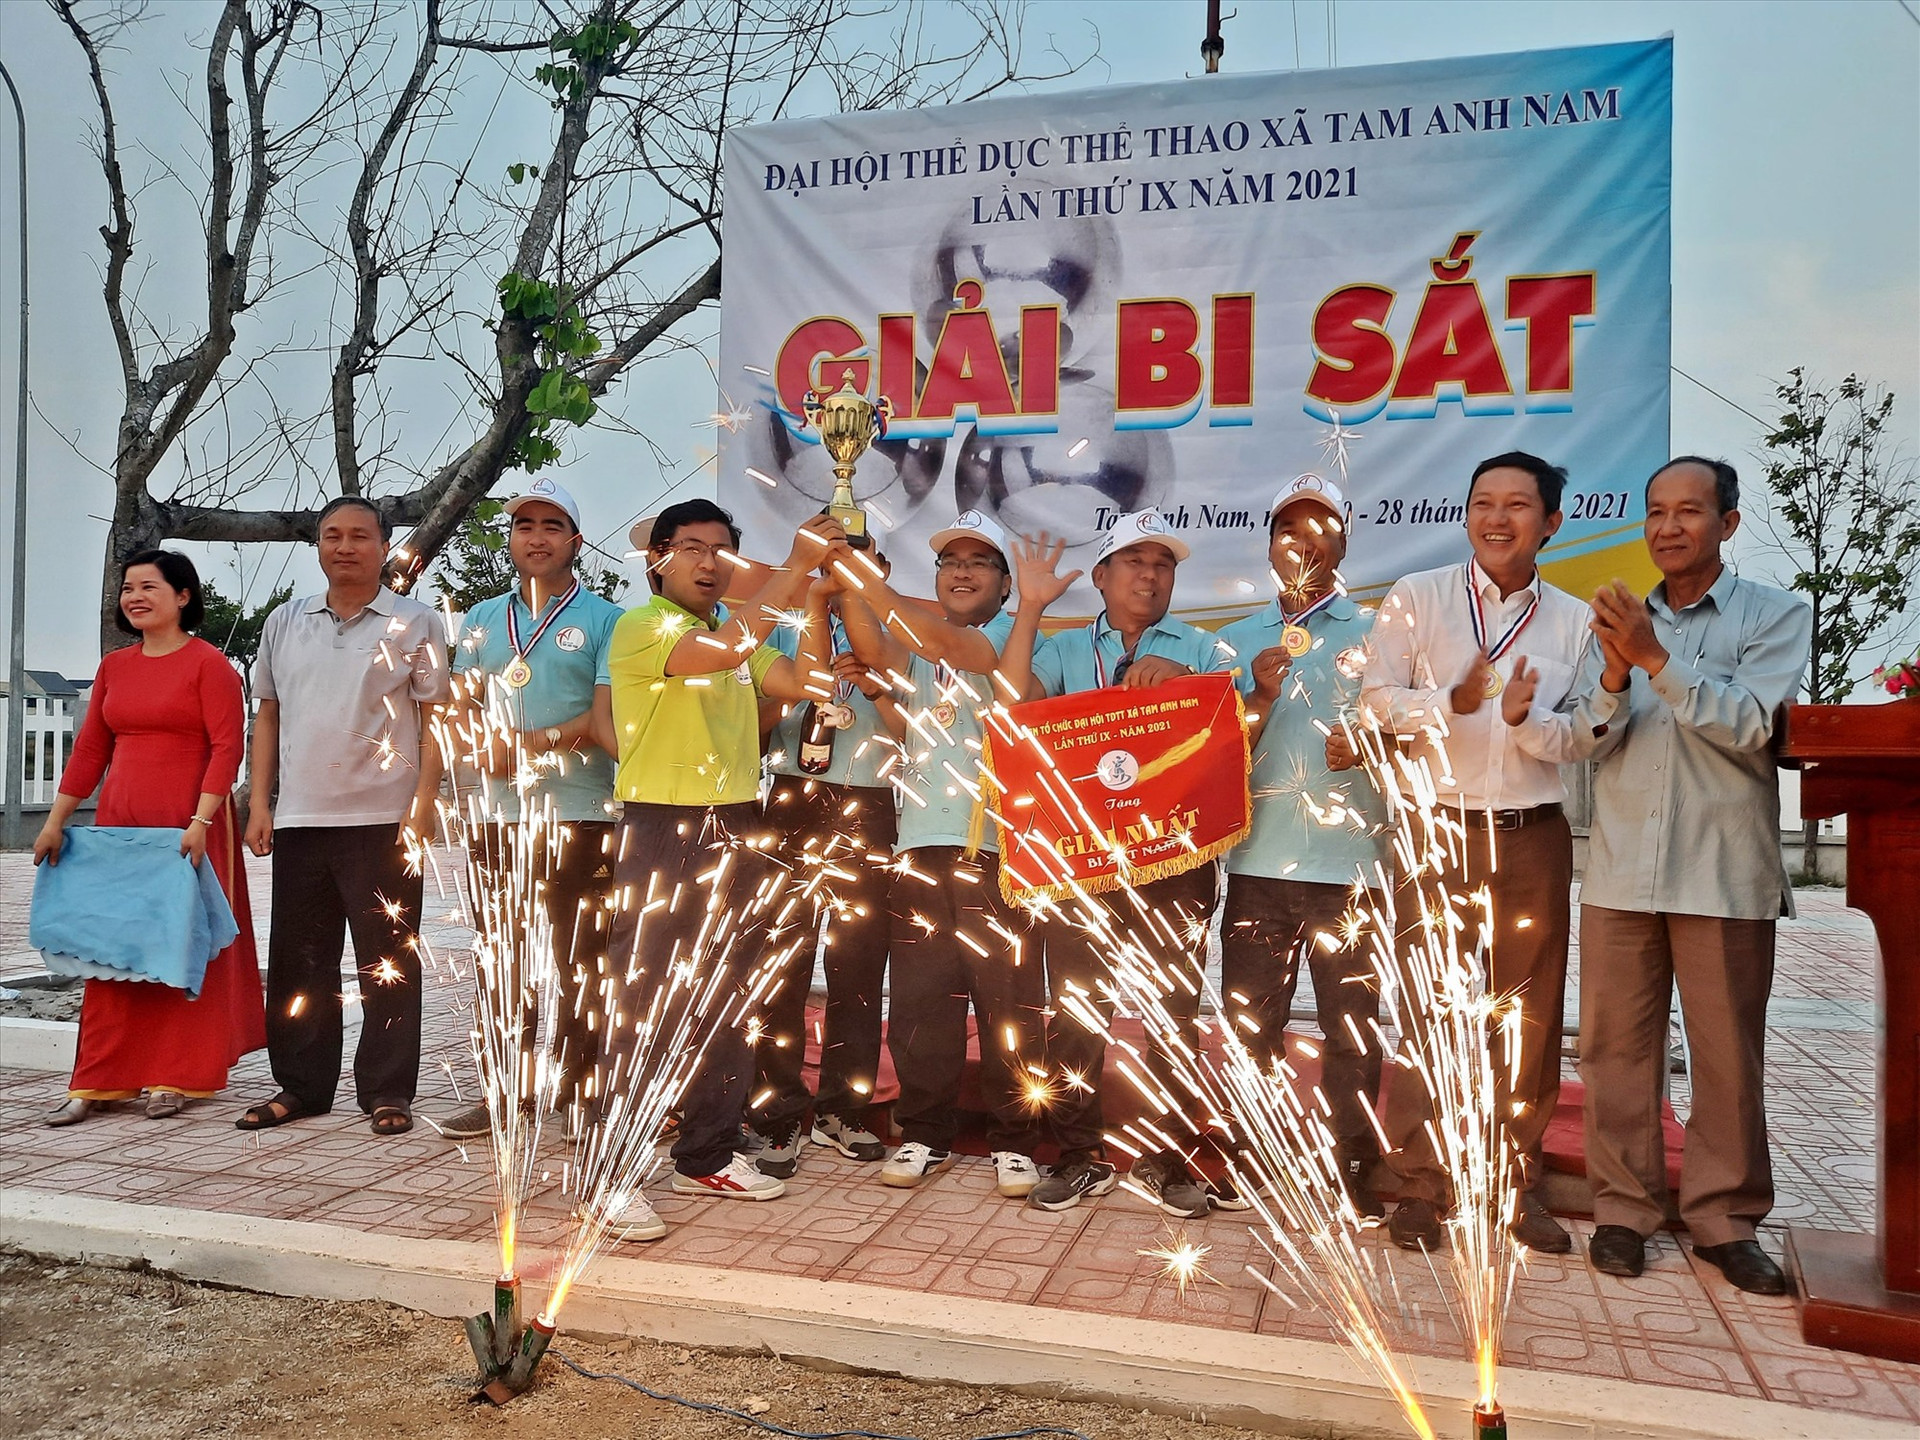 Giải đấu lần này, UBND xã Tam Anh Nam còn mời một số địa phương khác đến tham gia, chia sẻ kinh nghiệm và hướng dẫn kỹ thuật chơi, điều lệ thi đấu để phát triển bộ môn thể thao này trên địa bàn huyện.